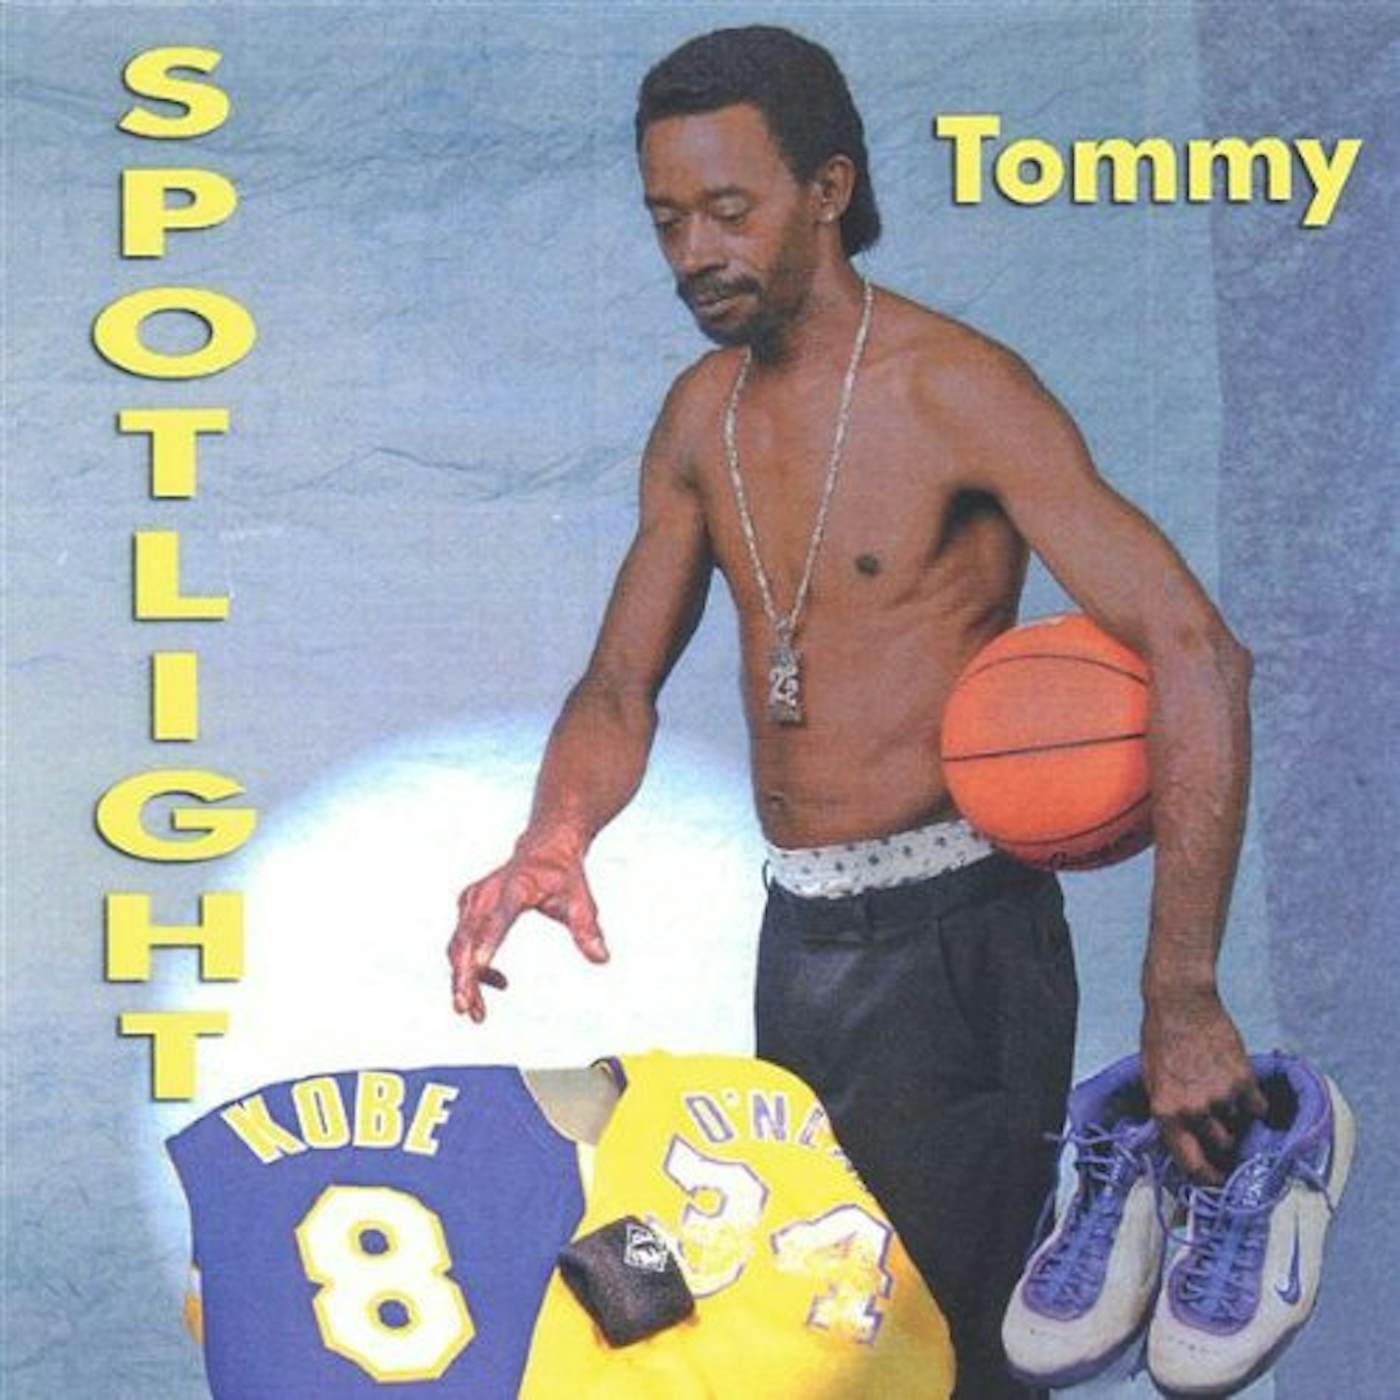 Tommy SPOT LIGHT NBA CD